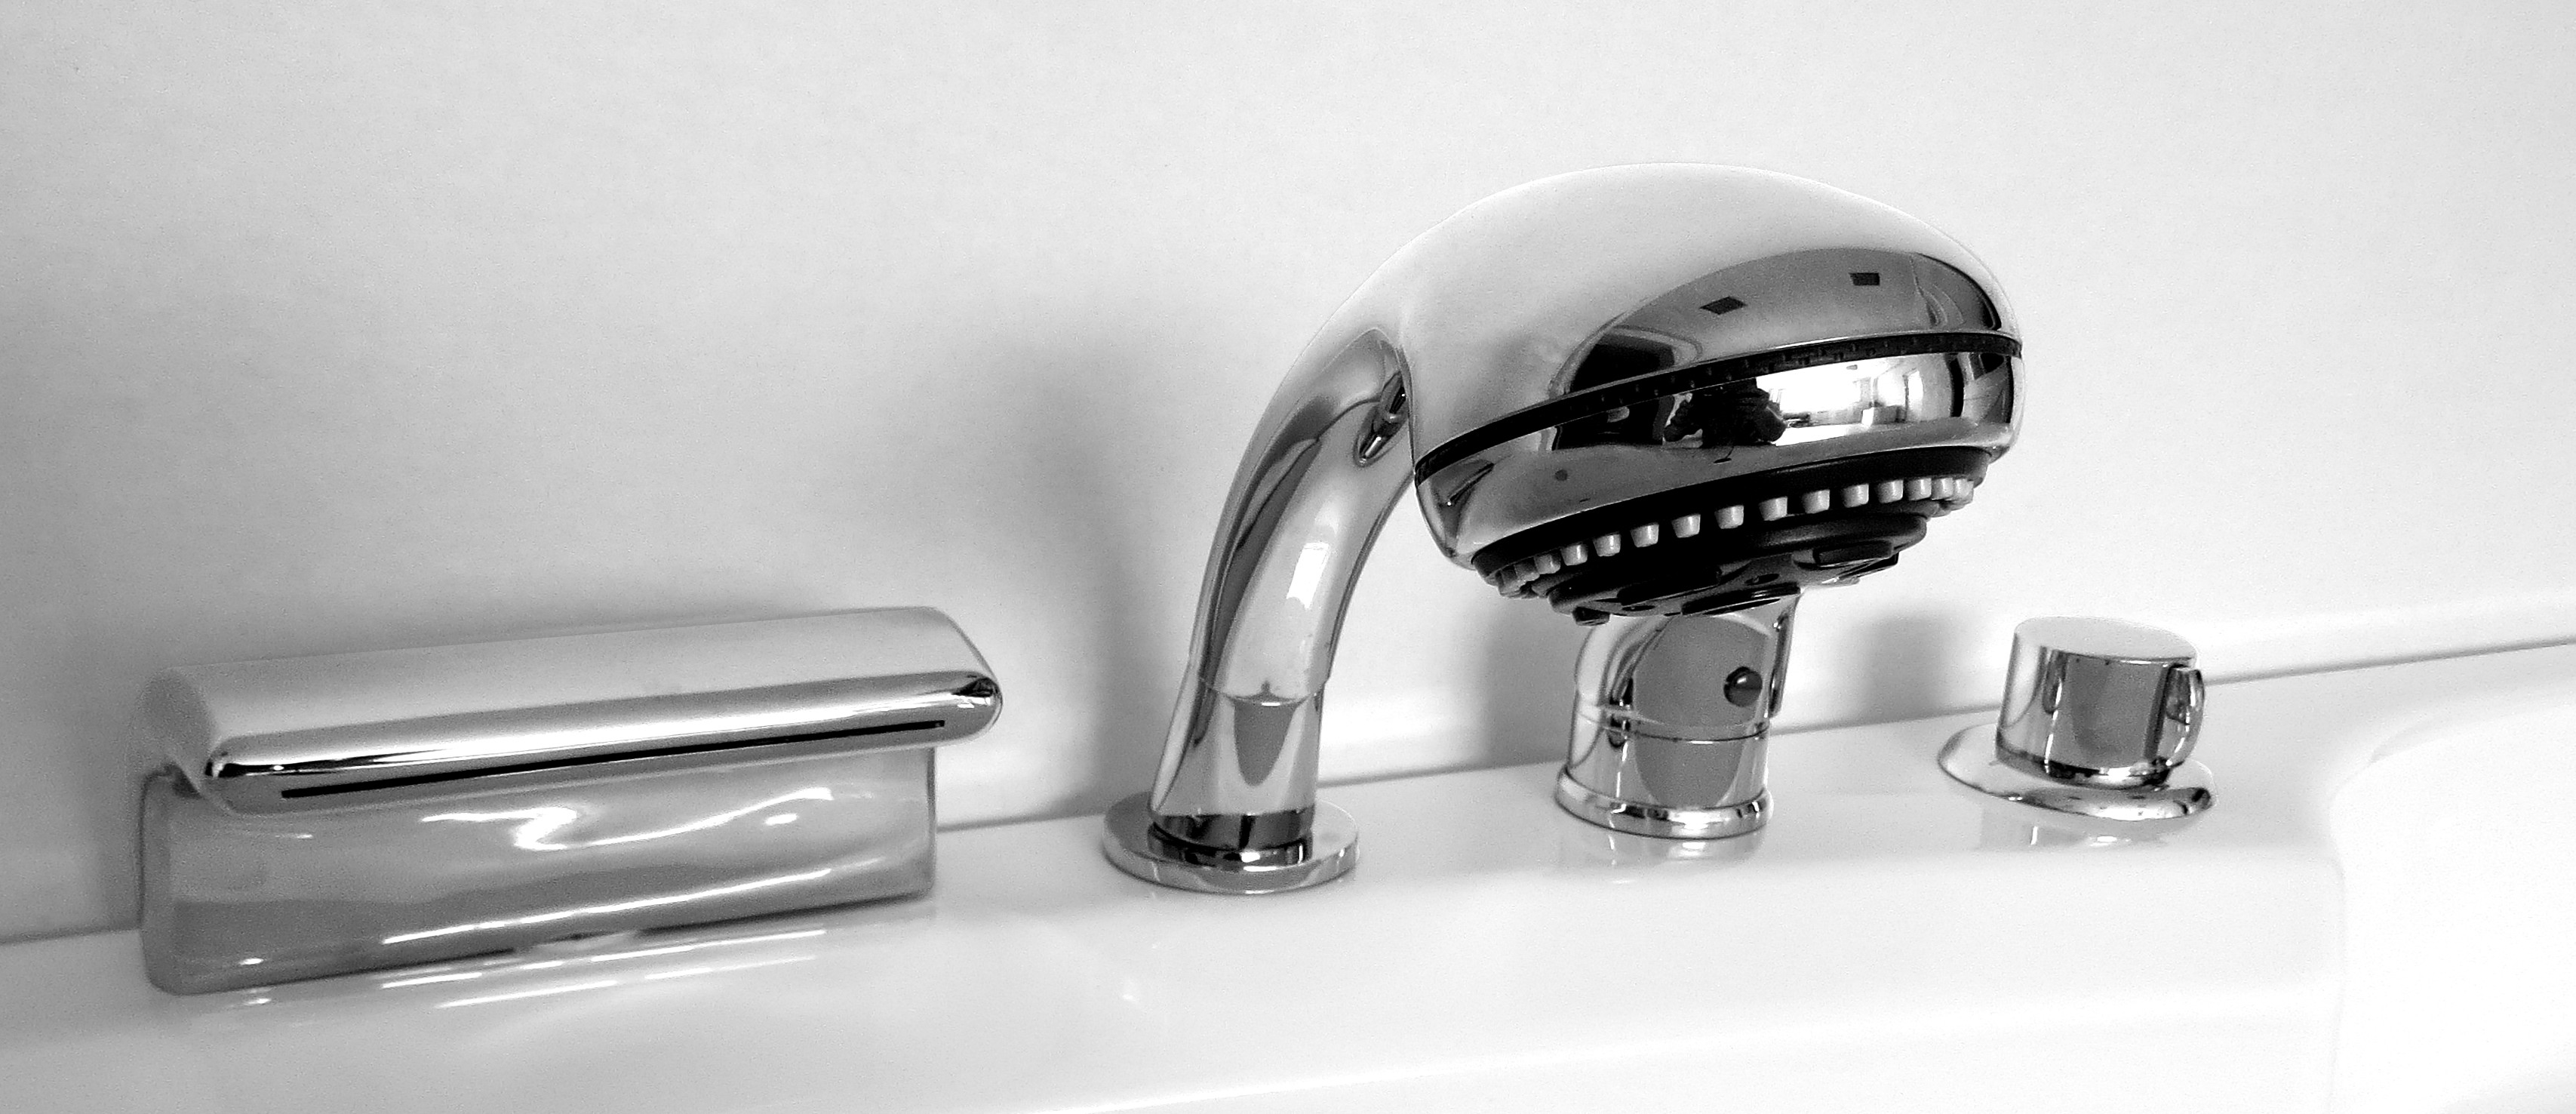 Смеситель для раковины в ванную комнату: полезные рекомендации для приобретения и установки